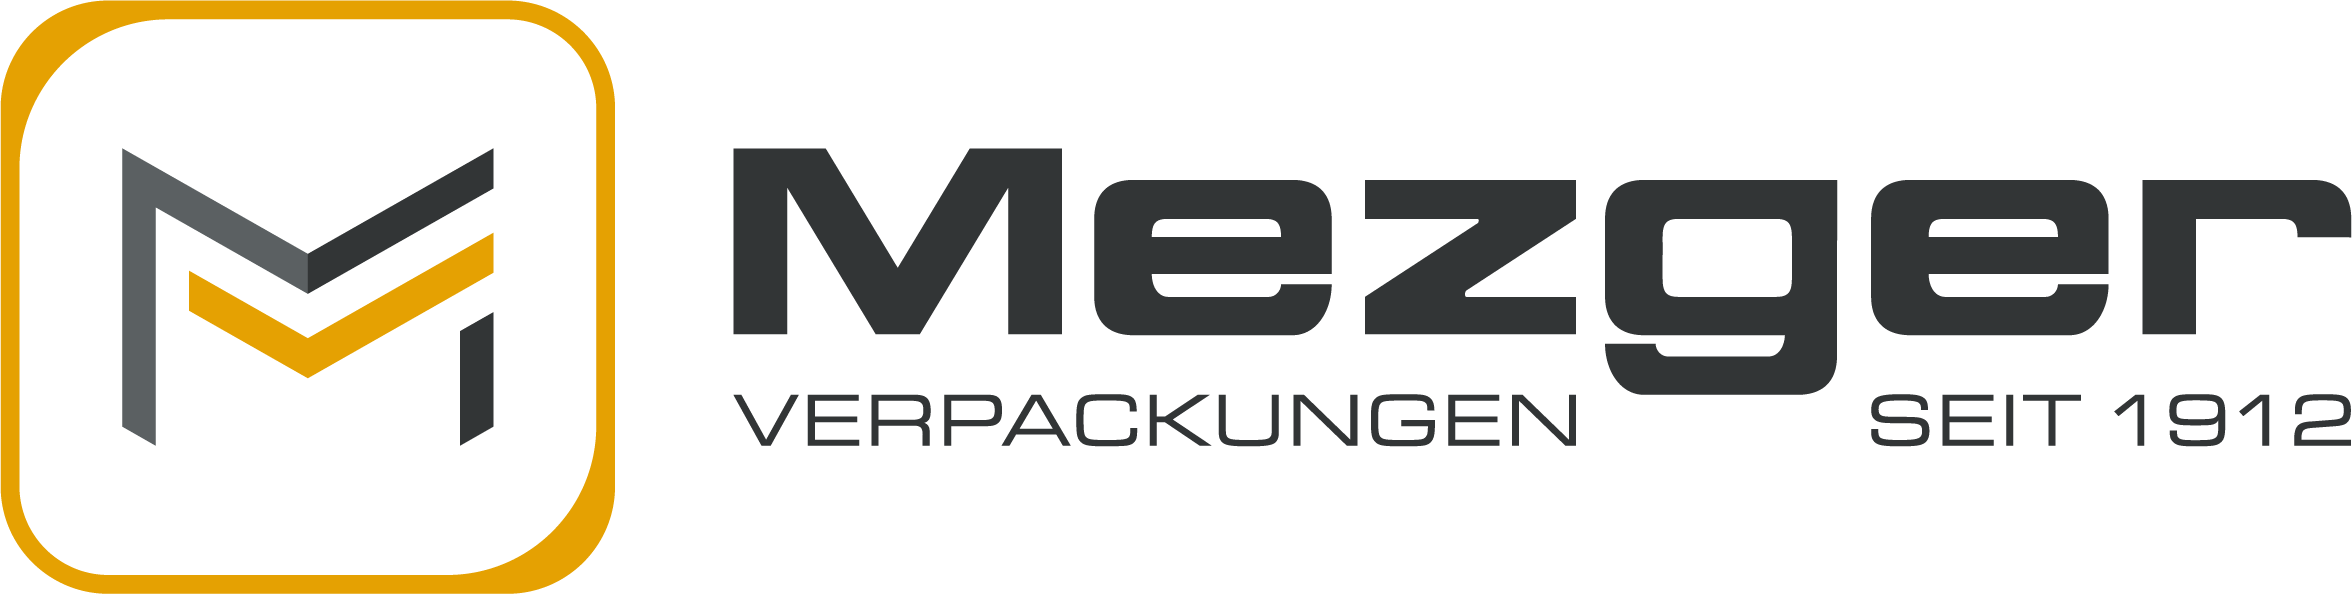 Logo MezgerVerpackungen positiv ungefuellt Zeichenflache 1